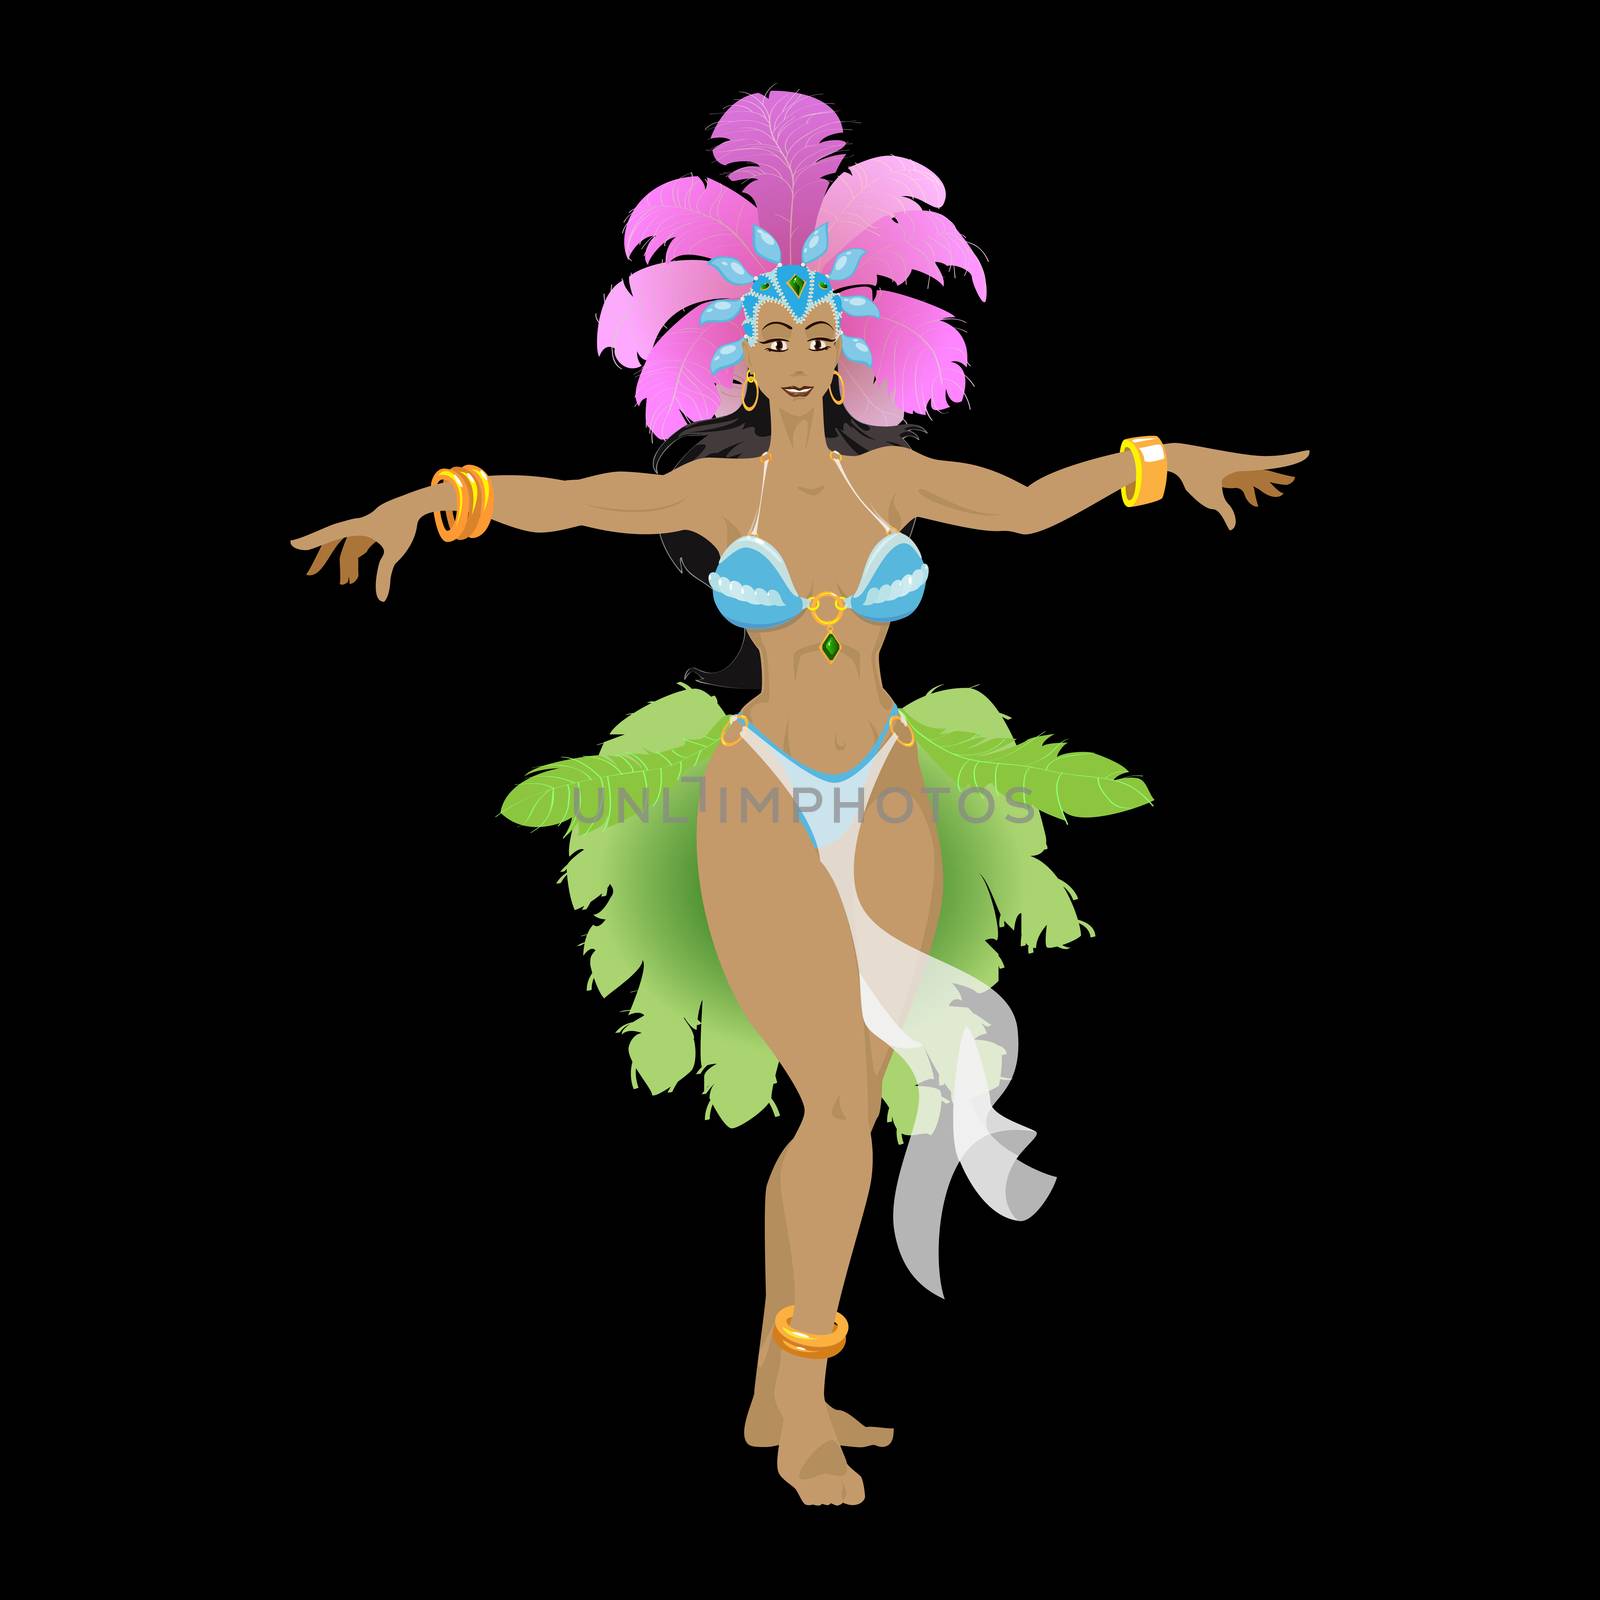 Samba dancer in carnival costume by Rogalevv